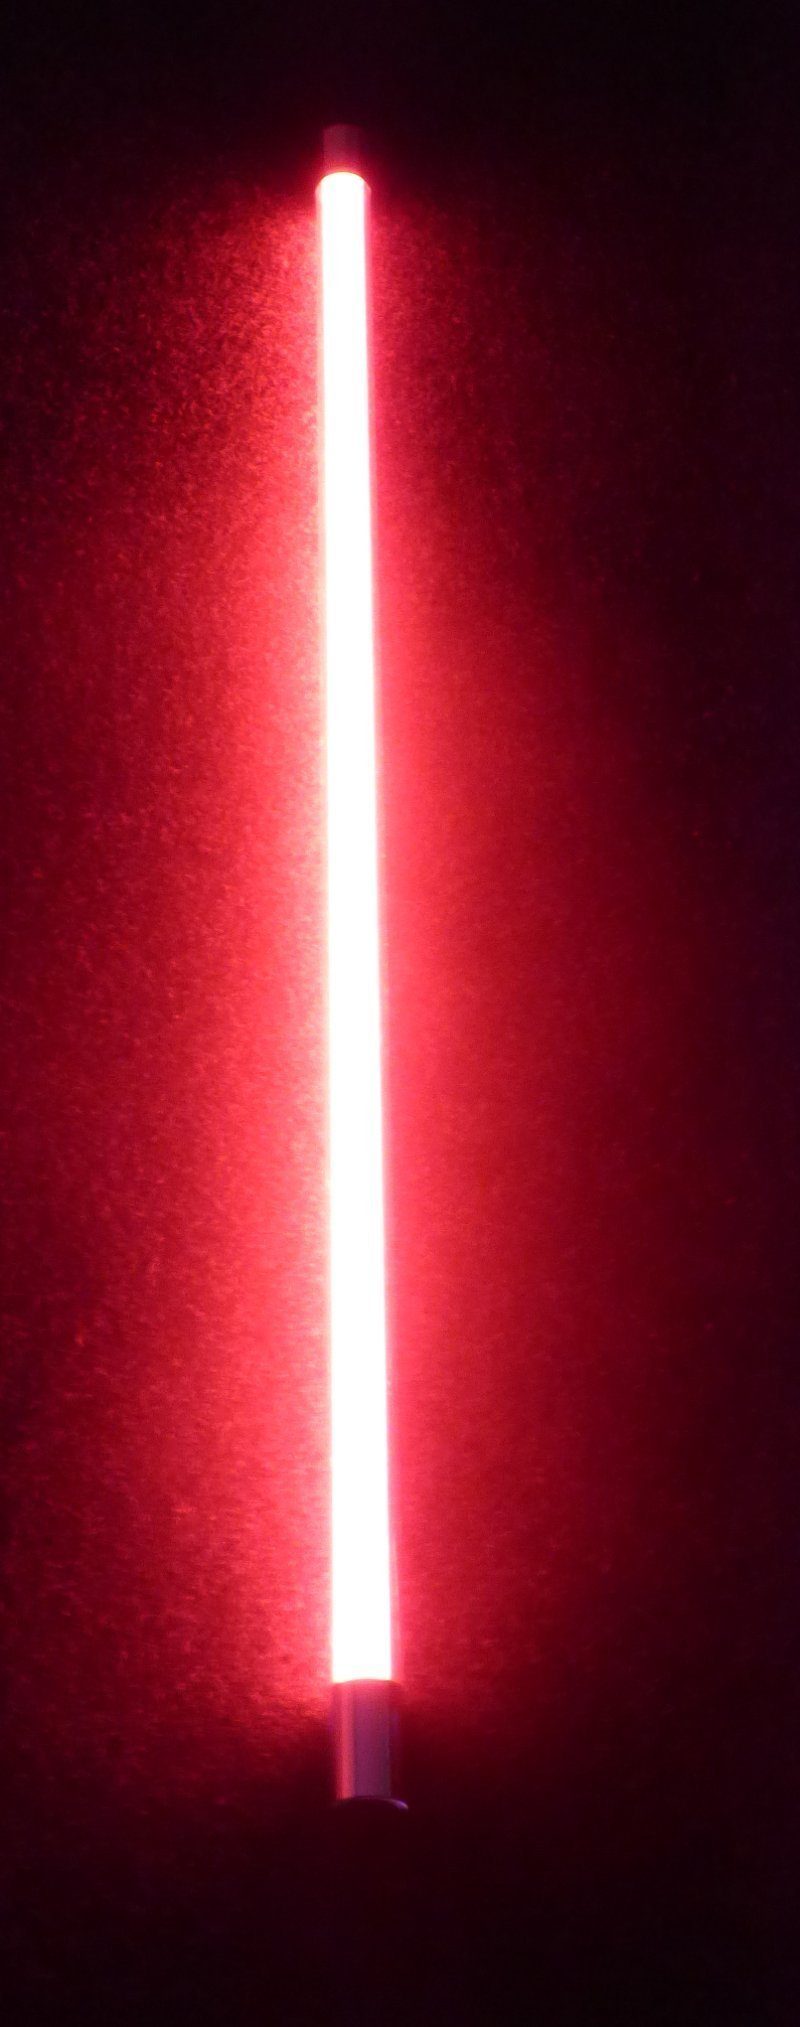 Kabel T8, weißes Xenon Watt cm, Röhre XENON 1000 mit Wandleuchte ROT LED Leuchtstab Lumen Schalter LED 9 63